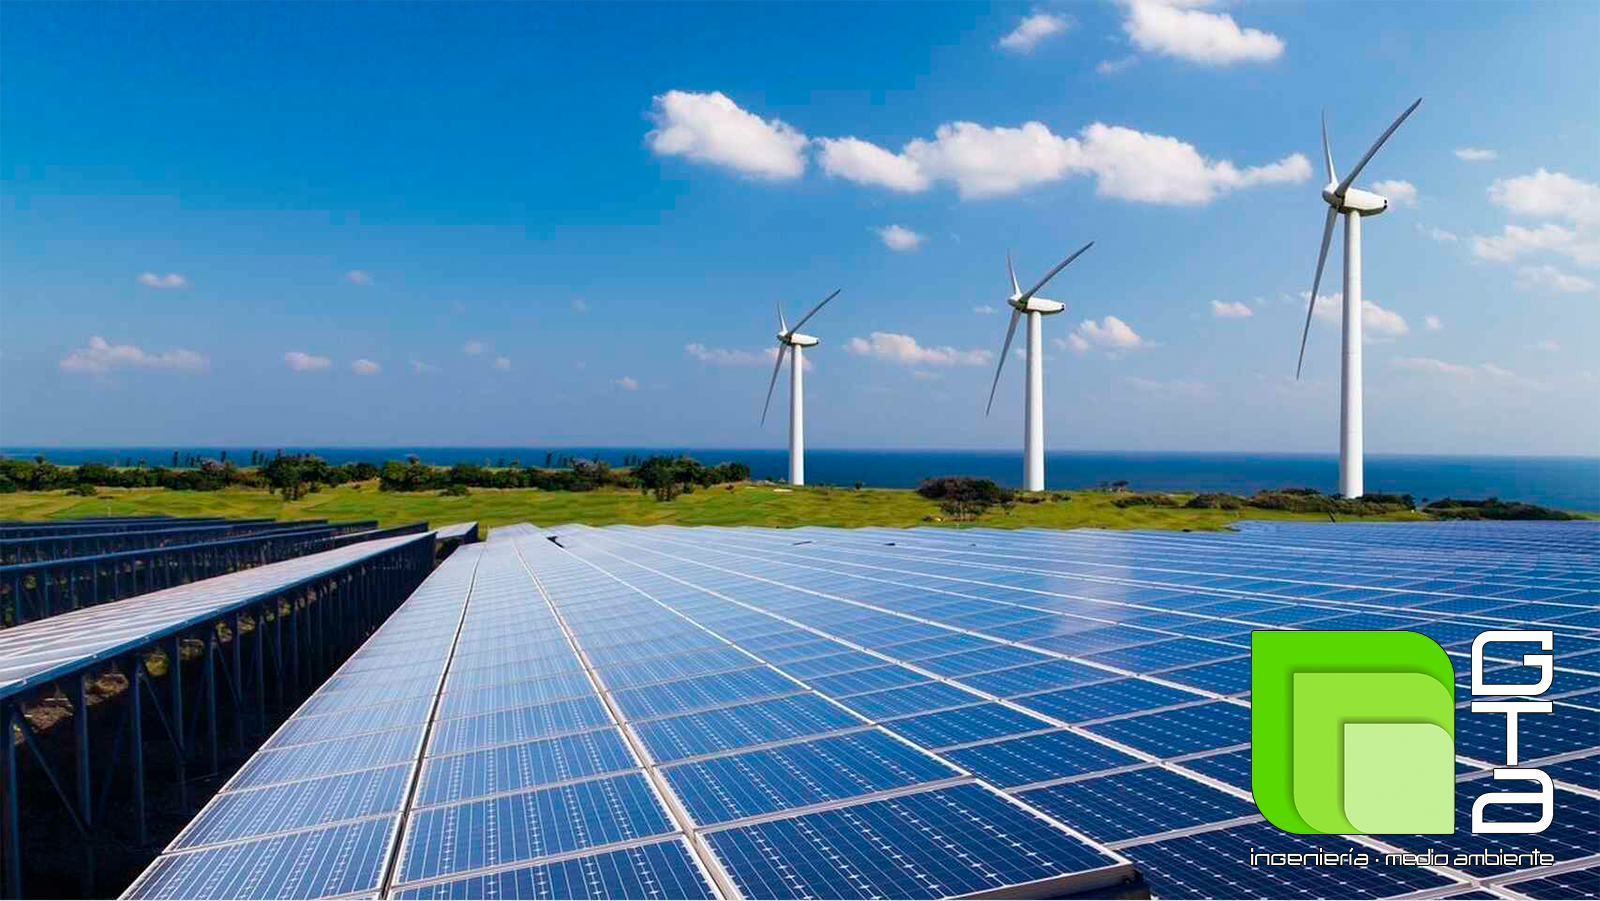 GTA Ingeniería y Medioambiente terminará el año 2020 con más de 700MW de potencia conectada a red de proyectos de energías renovables en Andalucía y Extremadura con declaración de impacto ambiental favorable